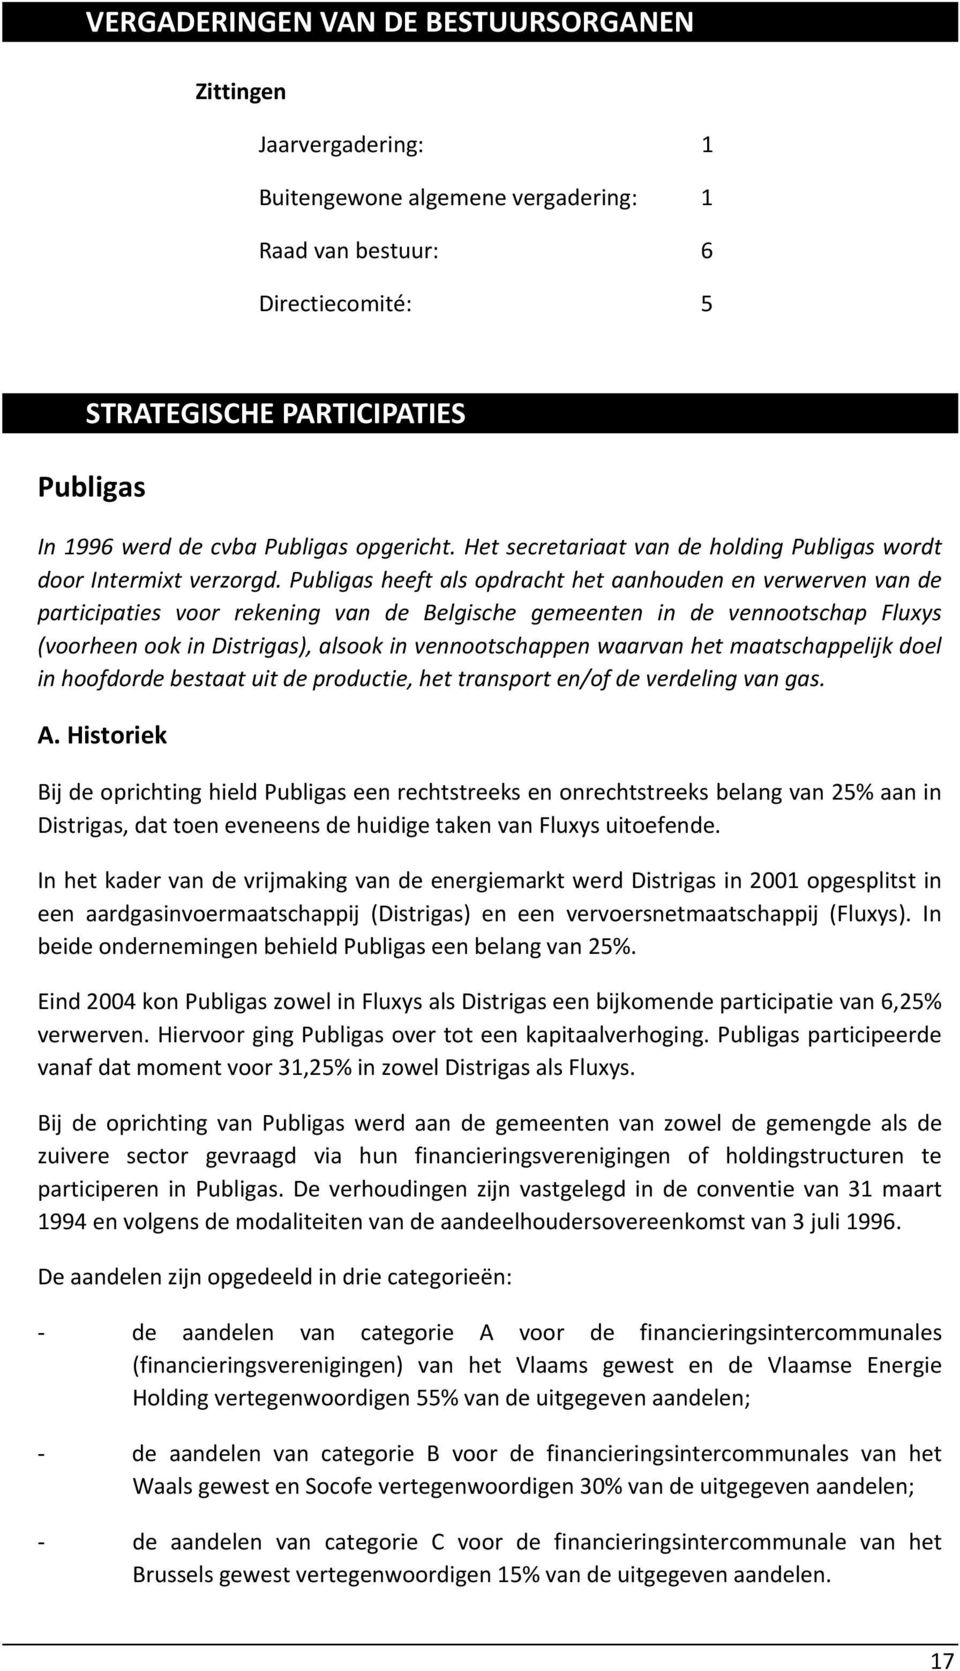 Publigas heeft als opdracht het aanhouden en verwerven van de participaties voor rekening van de Belgische gemeenten in de vennootschap Fluxys (voorheen ook in Distrigas), alsook in vennootschappen